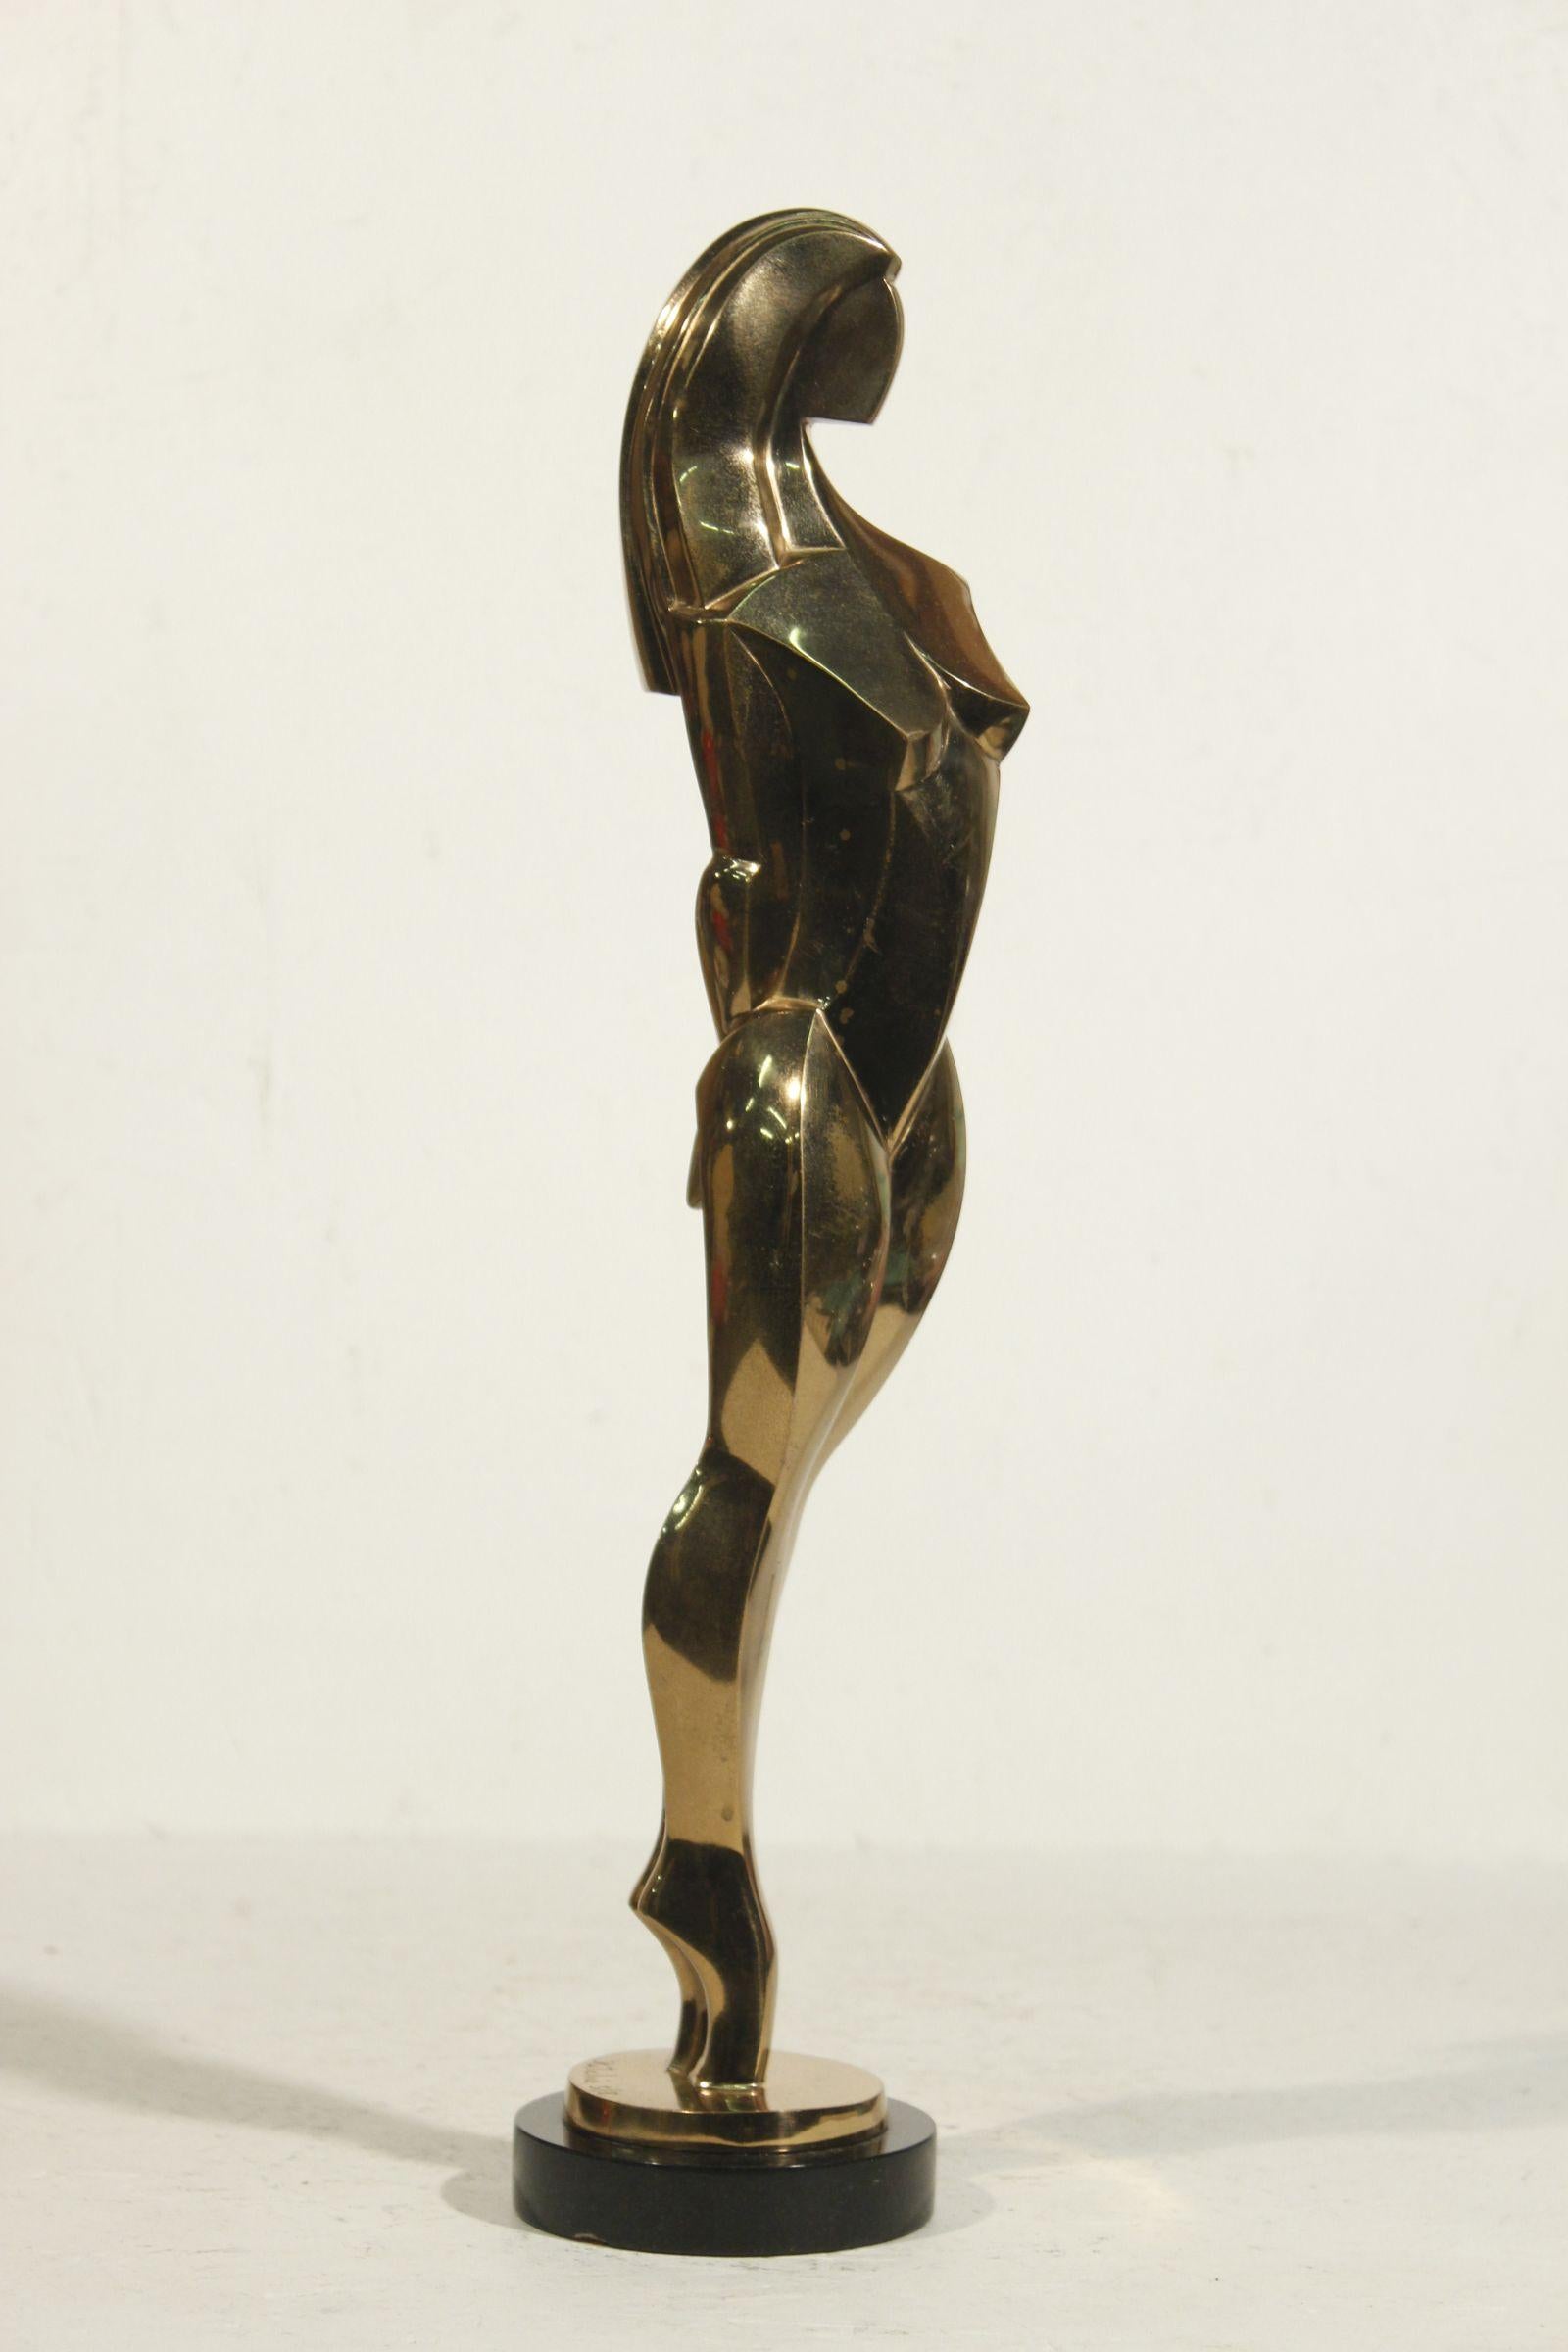 Vergoldete Bronzeskulptur einer stehenden Frau im figurativen kubistischen Stil von Jim Ritchie um 1990 in Vence, Frankreich, Auflage 5 von 8. 

In gutem strukturellem Zustand, hat keine Schäden, aber die Vergoldung zeigt Zeichen der Alterung an